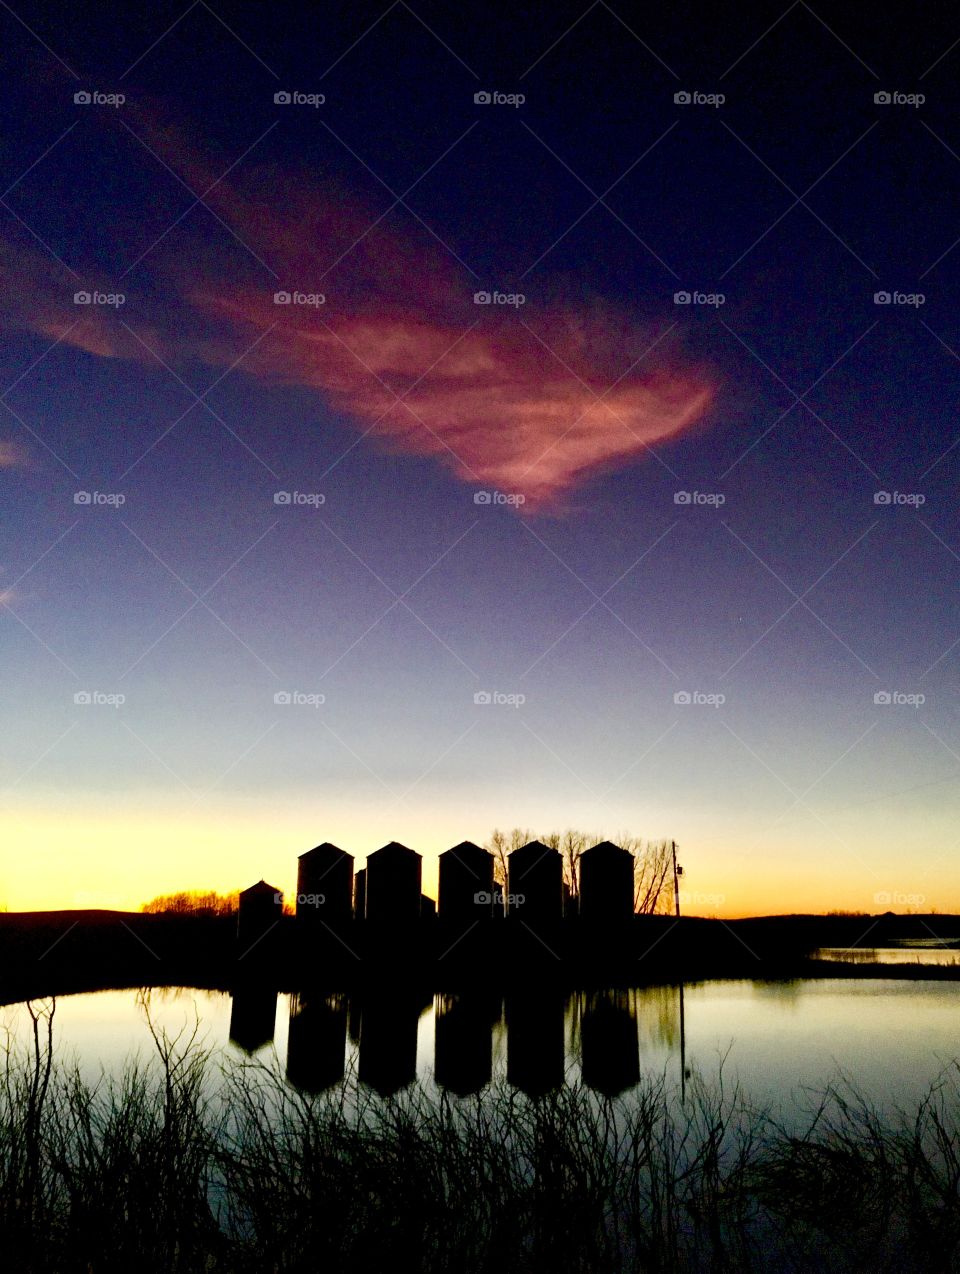 Amazing grain bin sunset reflection 